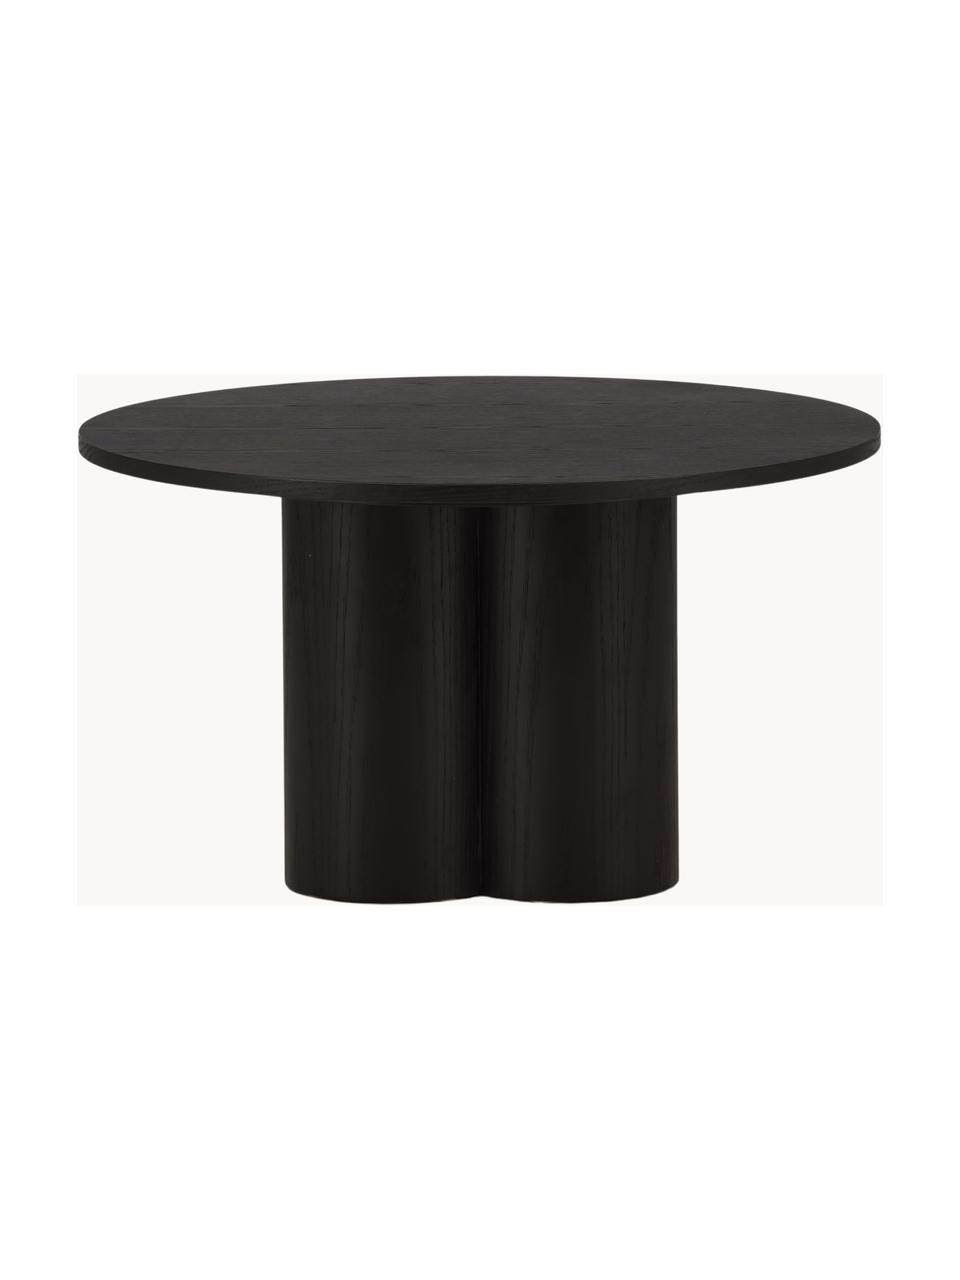 Kulatý dřevěný konferenční stolek Olivia, MDF deska (dřevovláknitá deska střední hustoty), Dřevo, černě lakované, Ø 80 cm